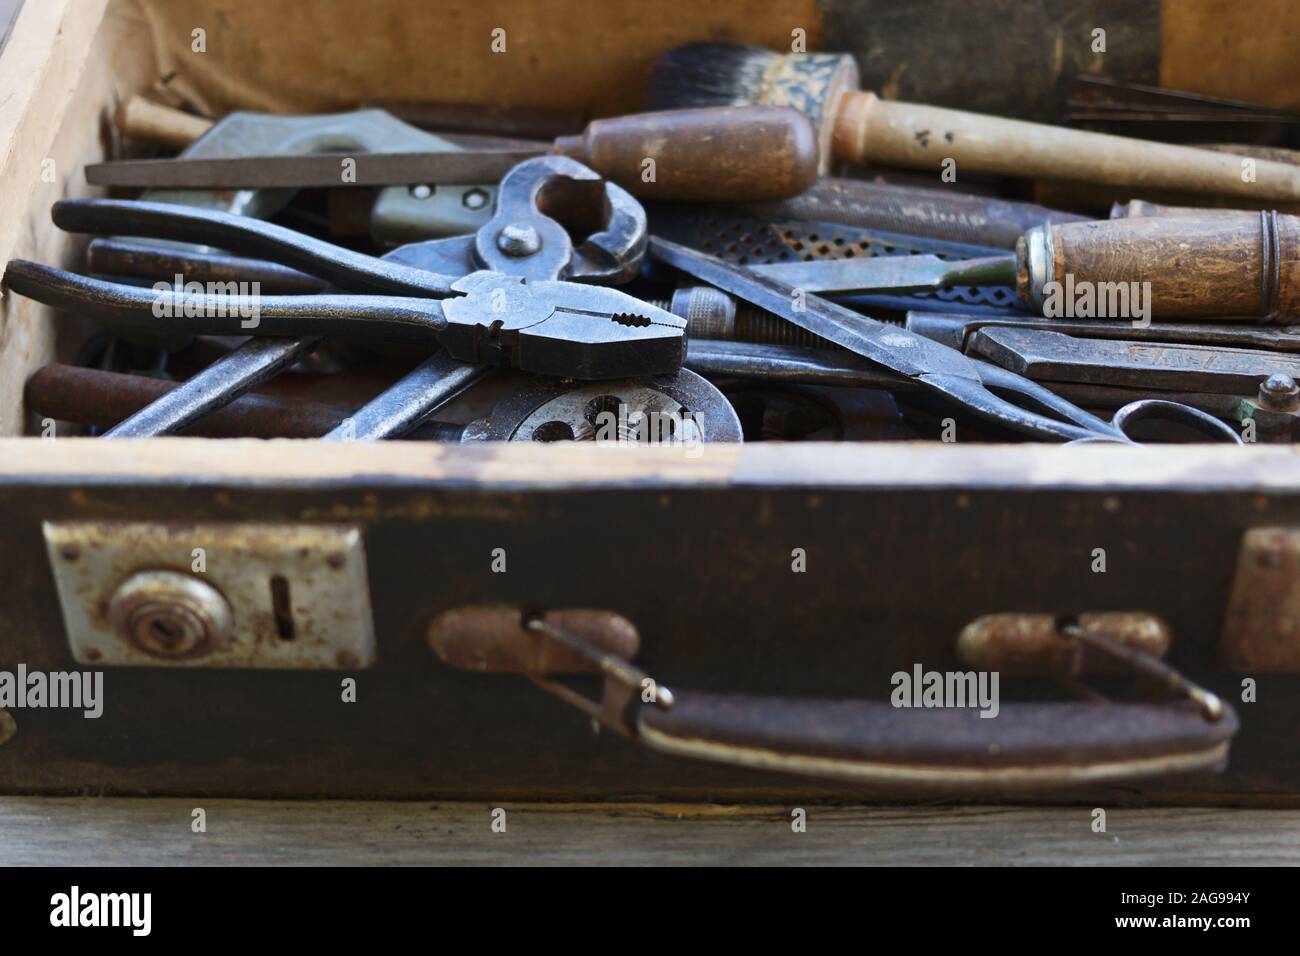 Werkzeugkasten-Satz von Schraubenschlüsseln, Kfz-Mechaniker-Werkzeuge im  Reparatursatz Fall mit Ratschengriff und Buchsen Stockfotografie - Alamy